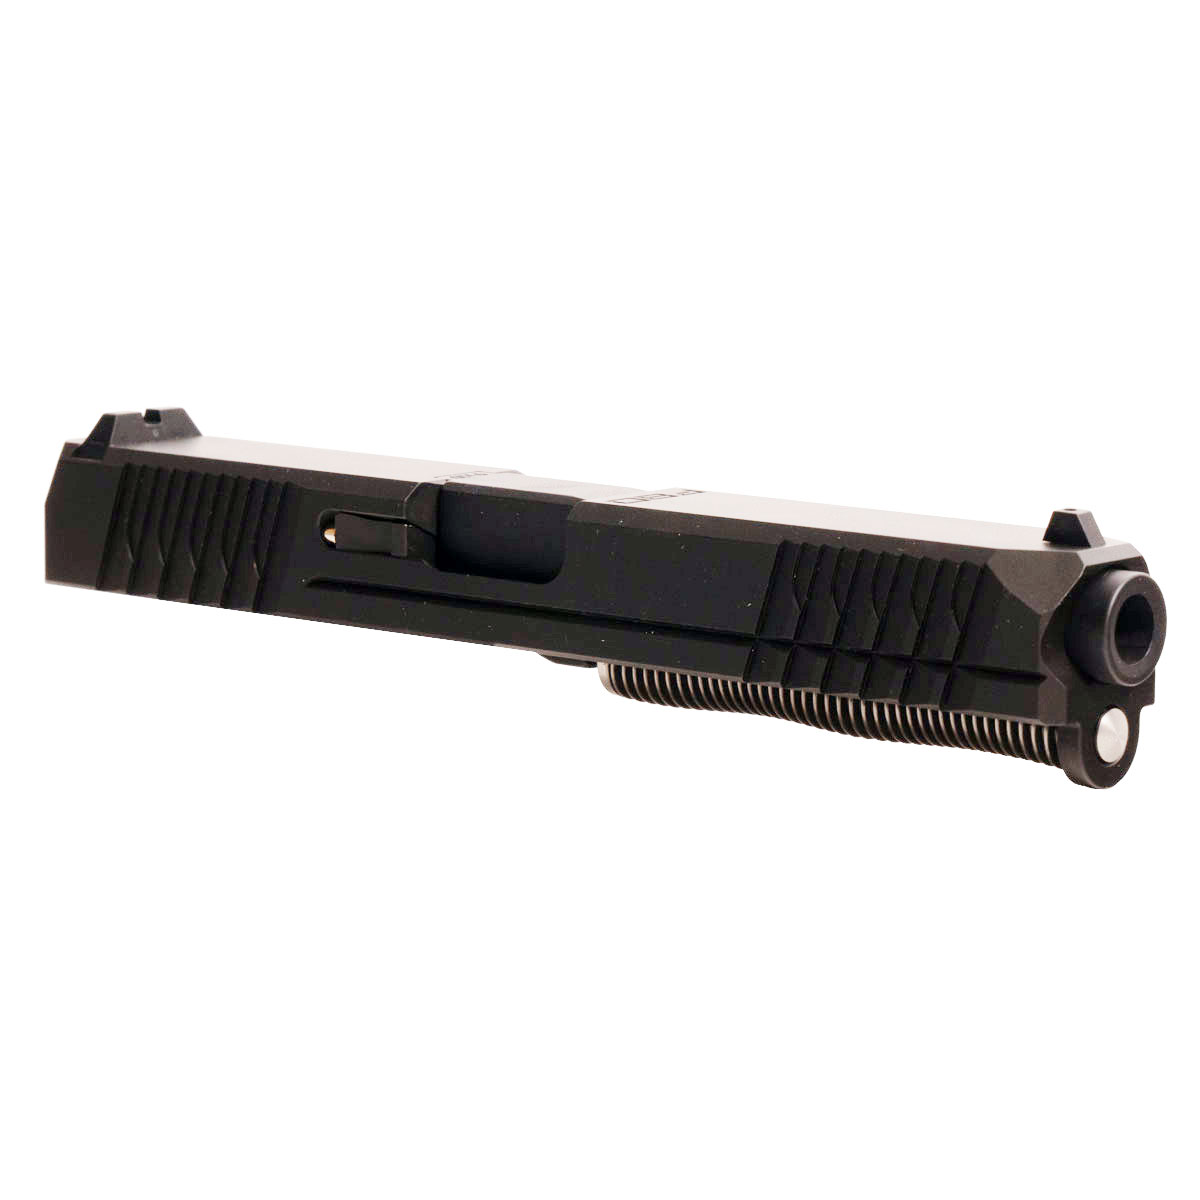 DDS 'Eidolon Ally' 9mm Complete Slide Kit - Glock 17 Gen 1-3 Compatible